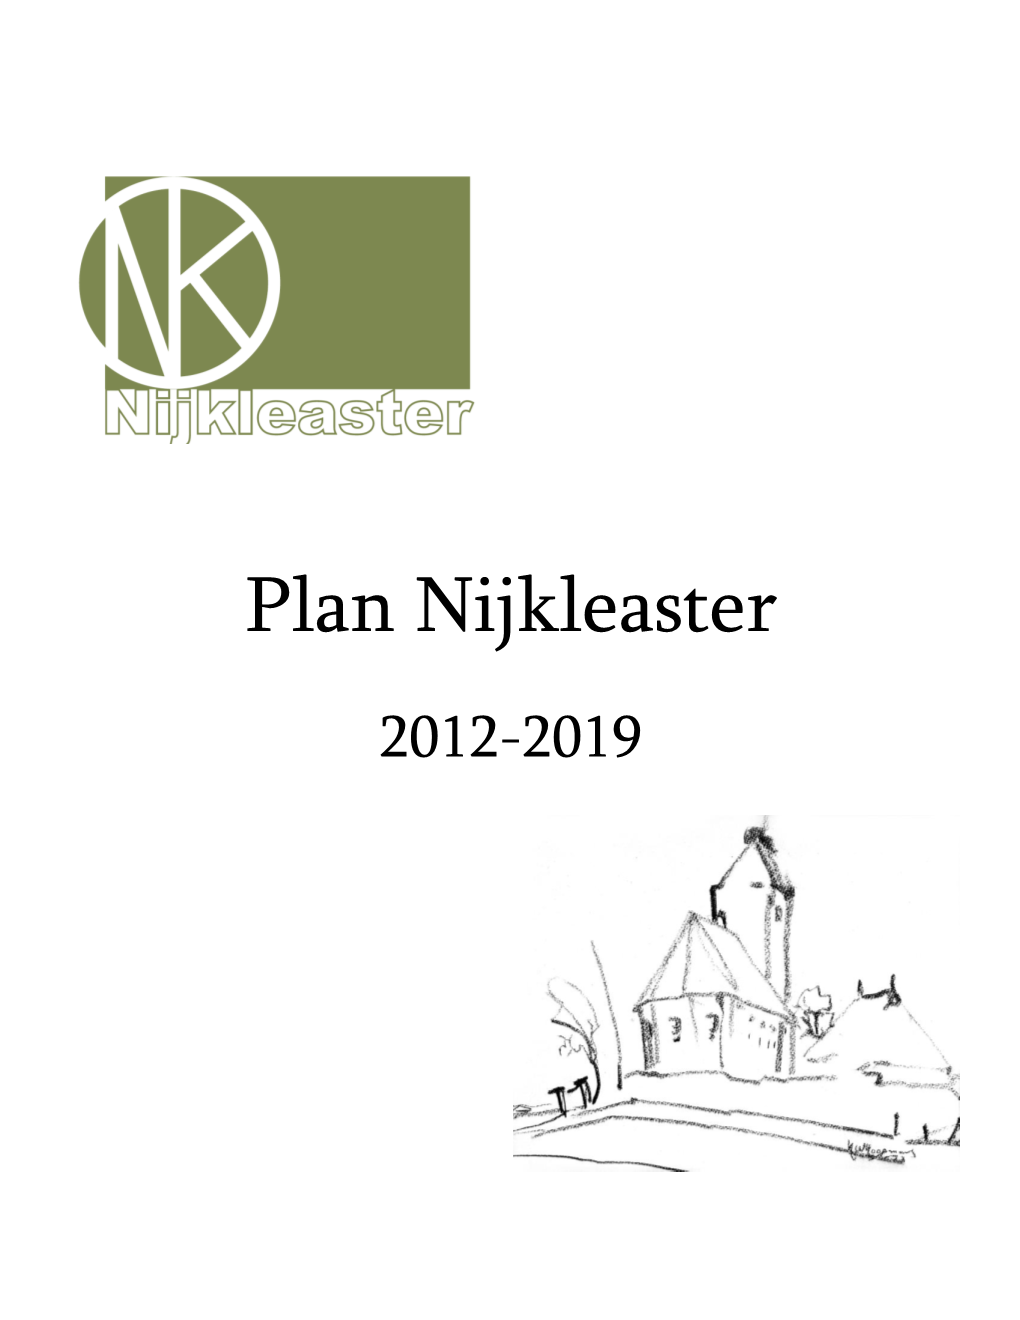 Plan Nijkleaster 2012-2019